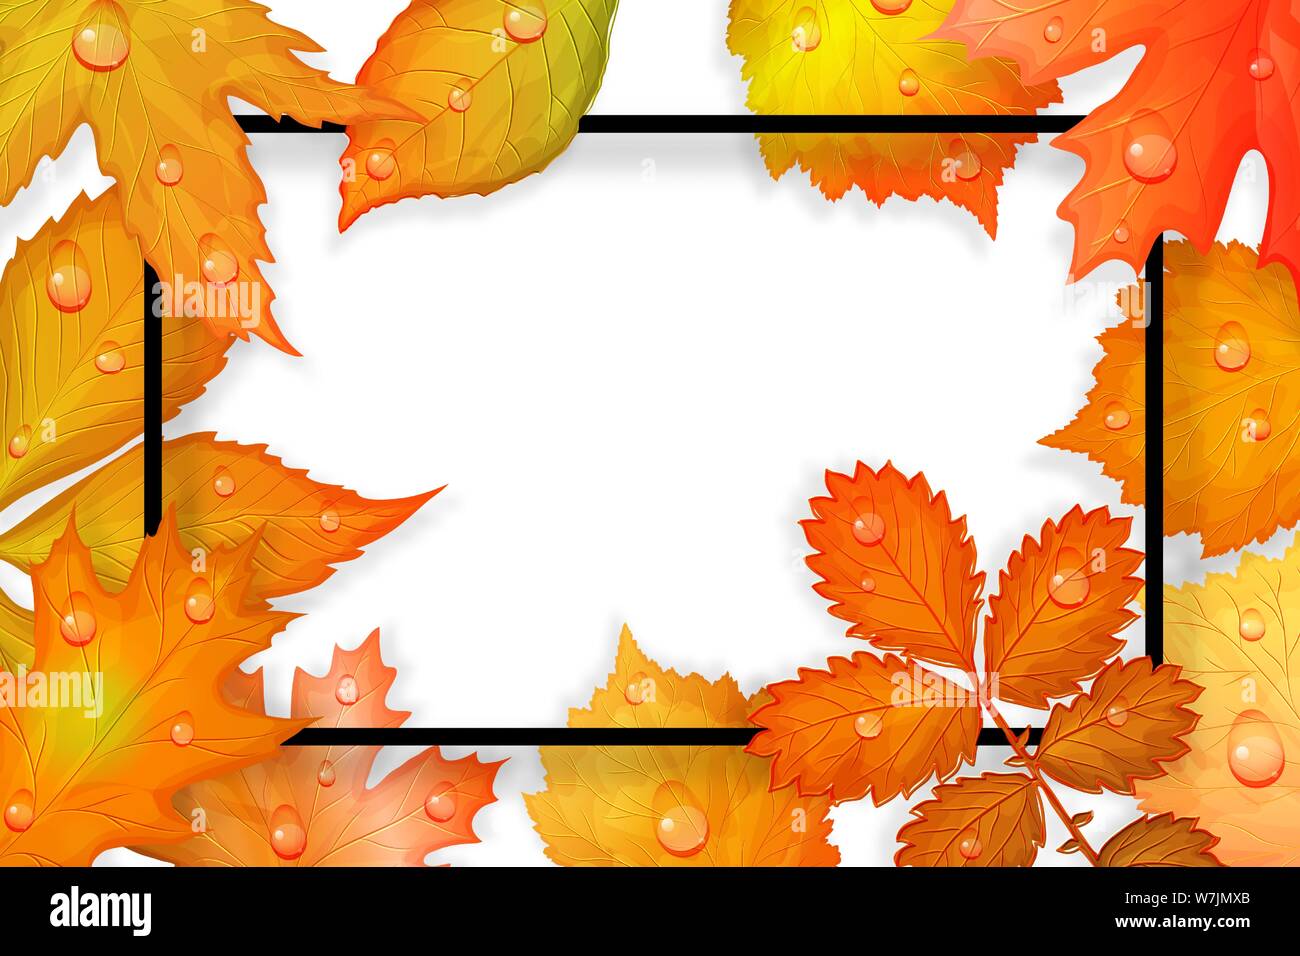 Bunte Blätter im Herbst. Vector Illustration Stock Vektor